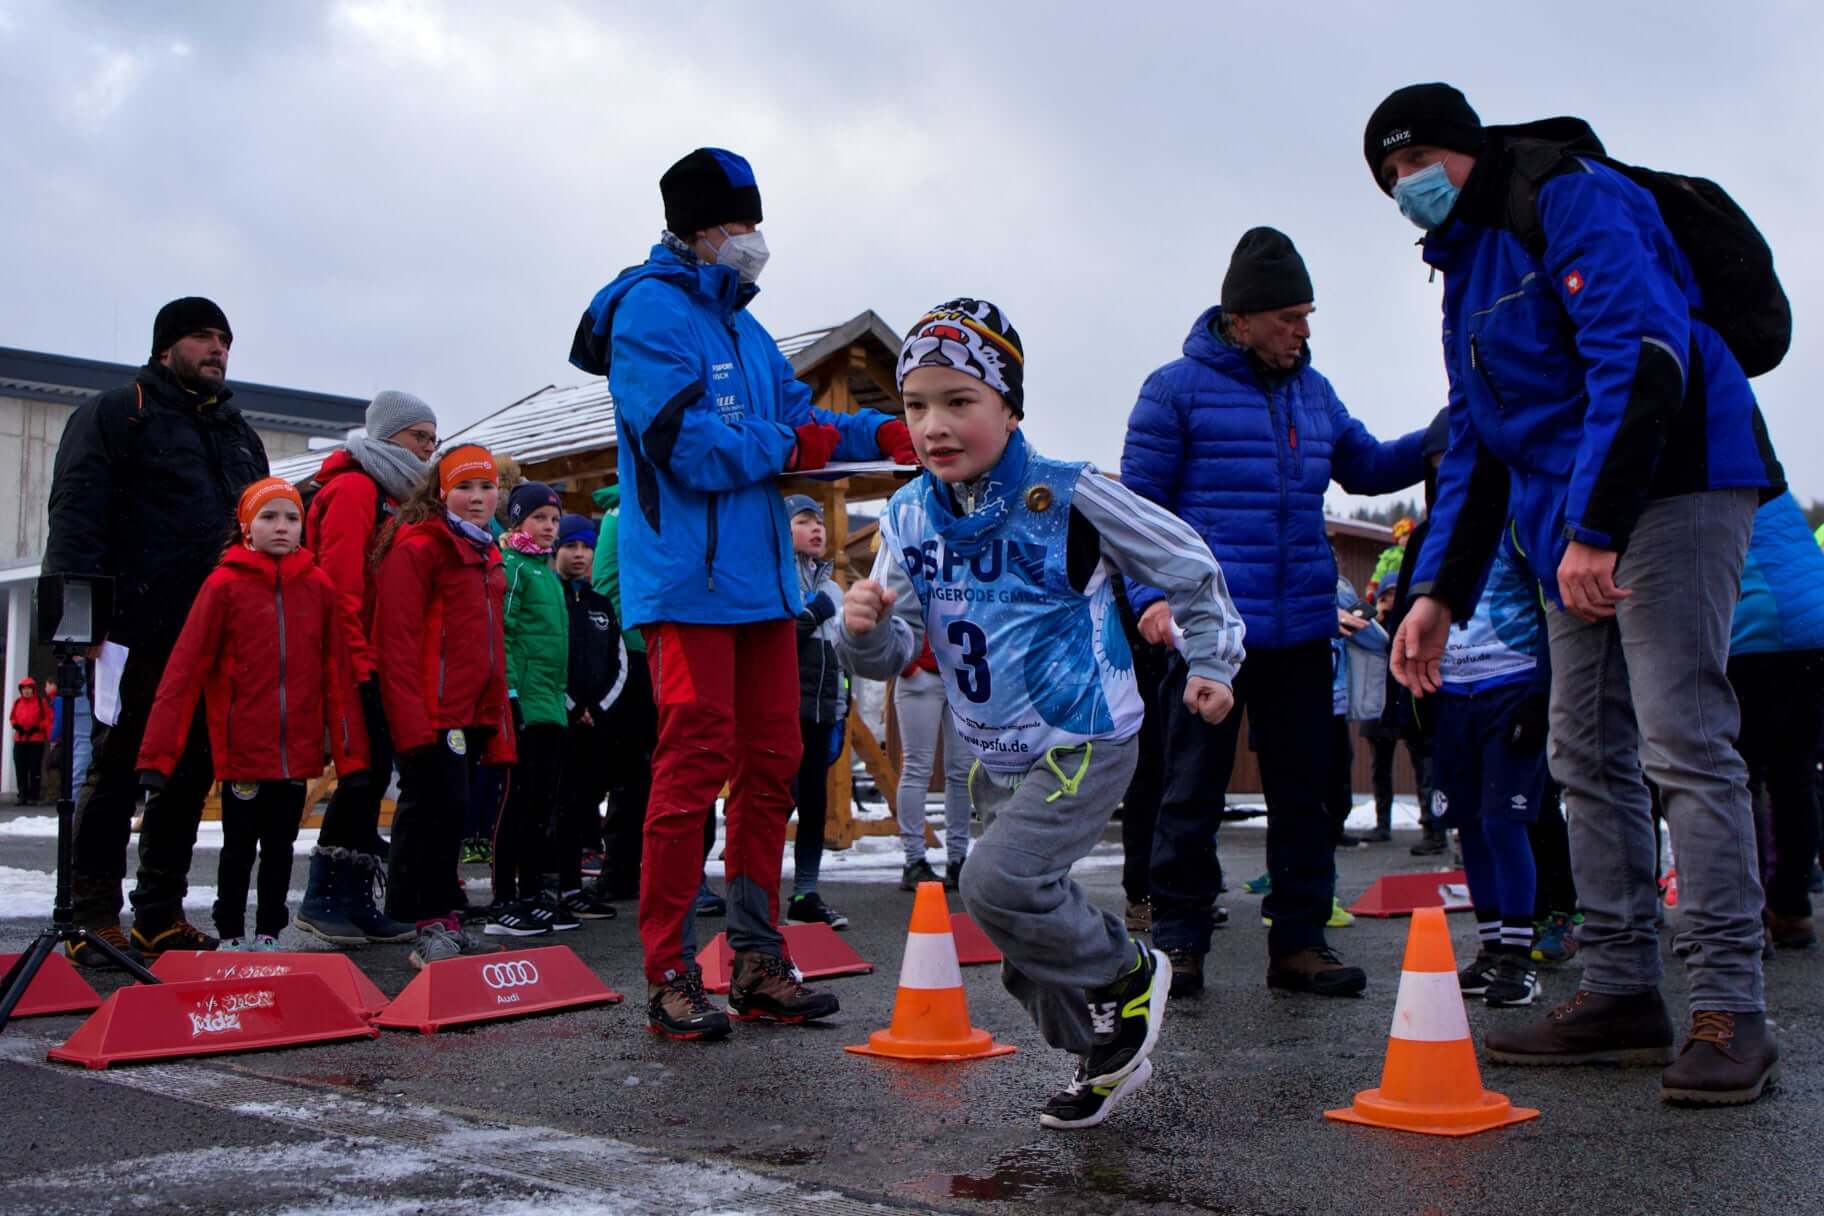 Sportlicher Ehrgeiz trotz Schneemangel bei den 10. Landesjugendspielen in  Schierke - Skiverband Sachsen-Anhalt